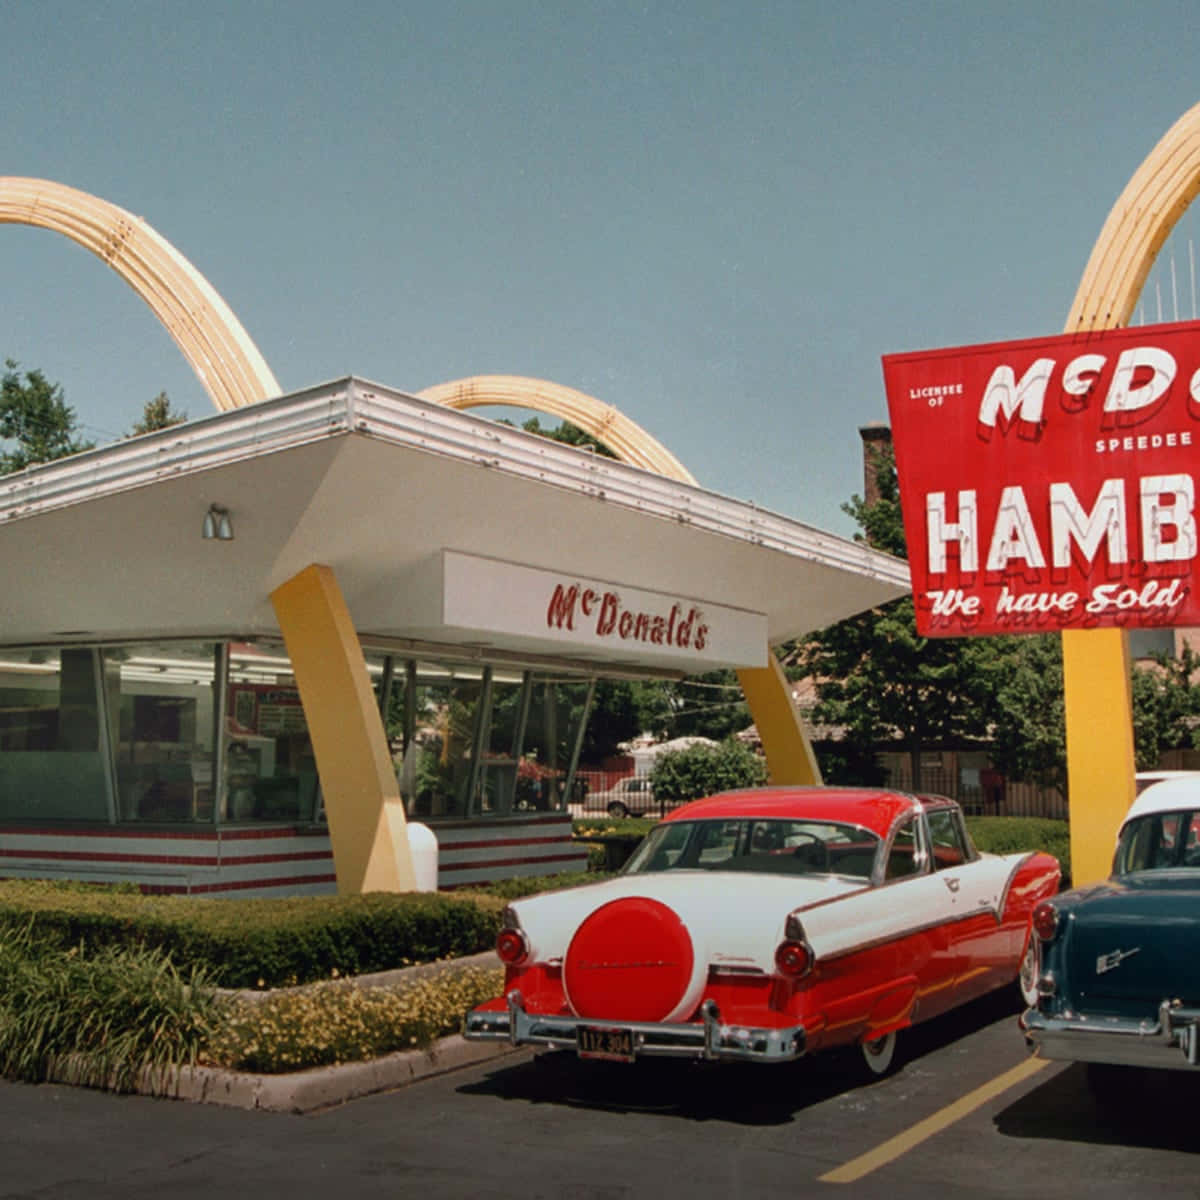 Hamburguesasde Mcdonald's En La Década De 1950